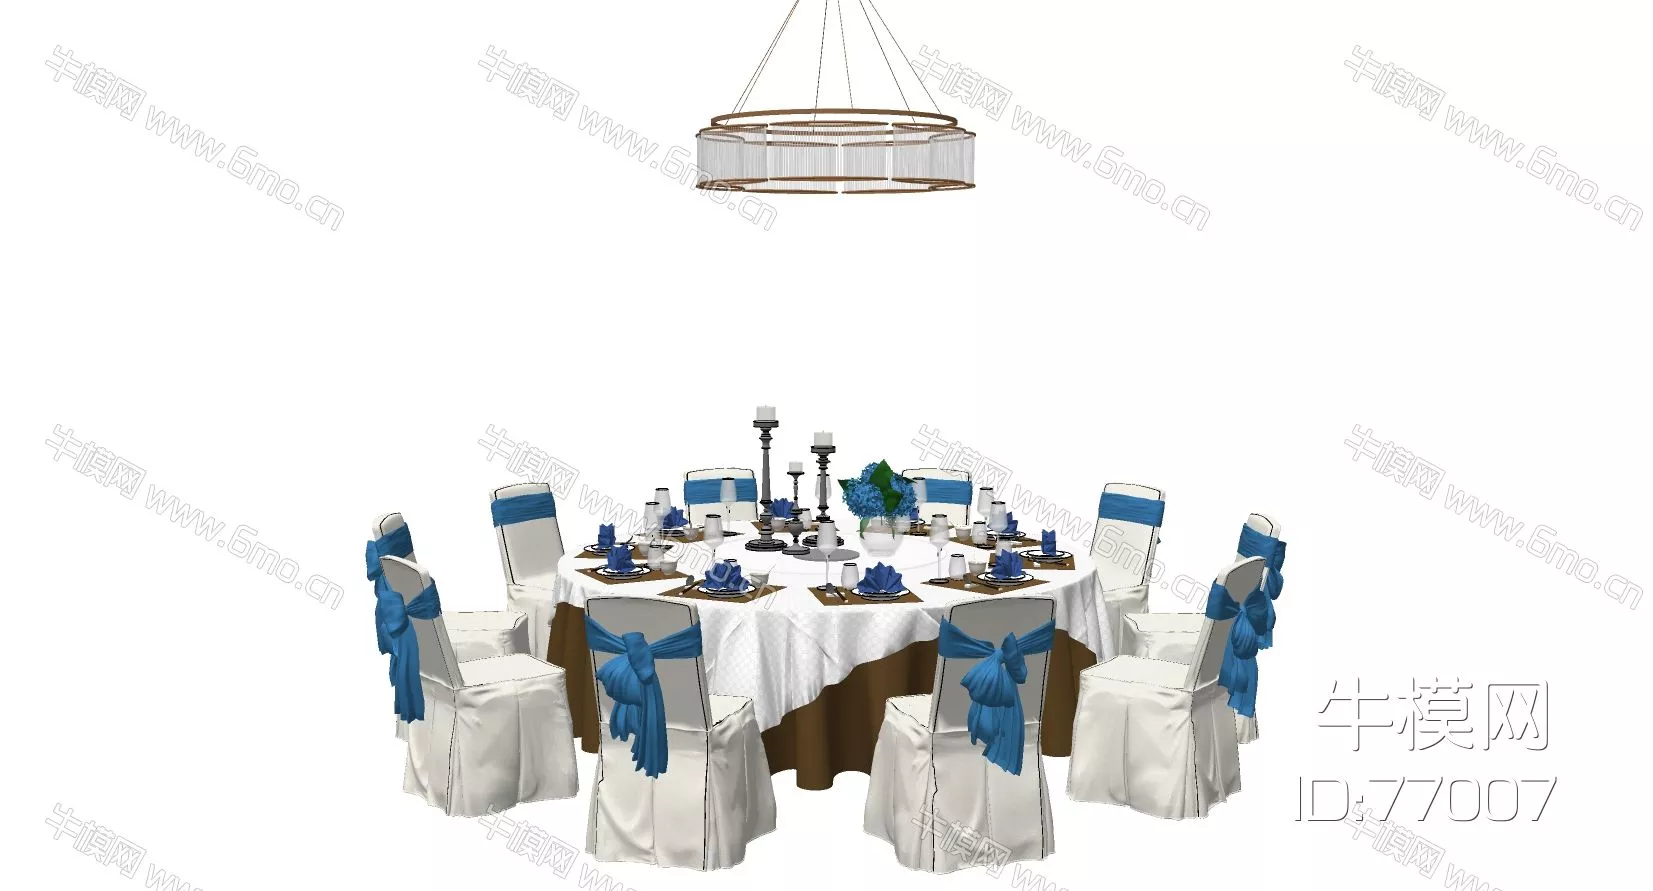 MODERN DINING TABLE SET - SKETCHUP 3D MODEL - ENSCAPE - 77007